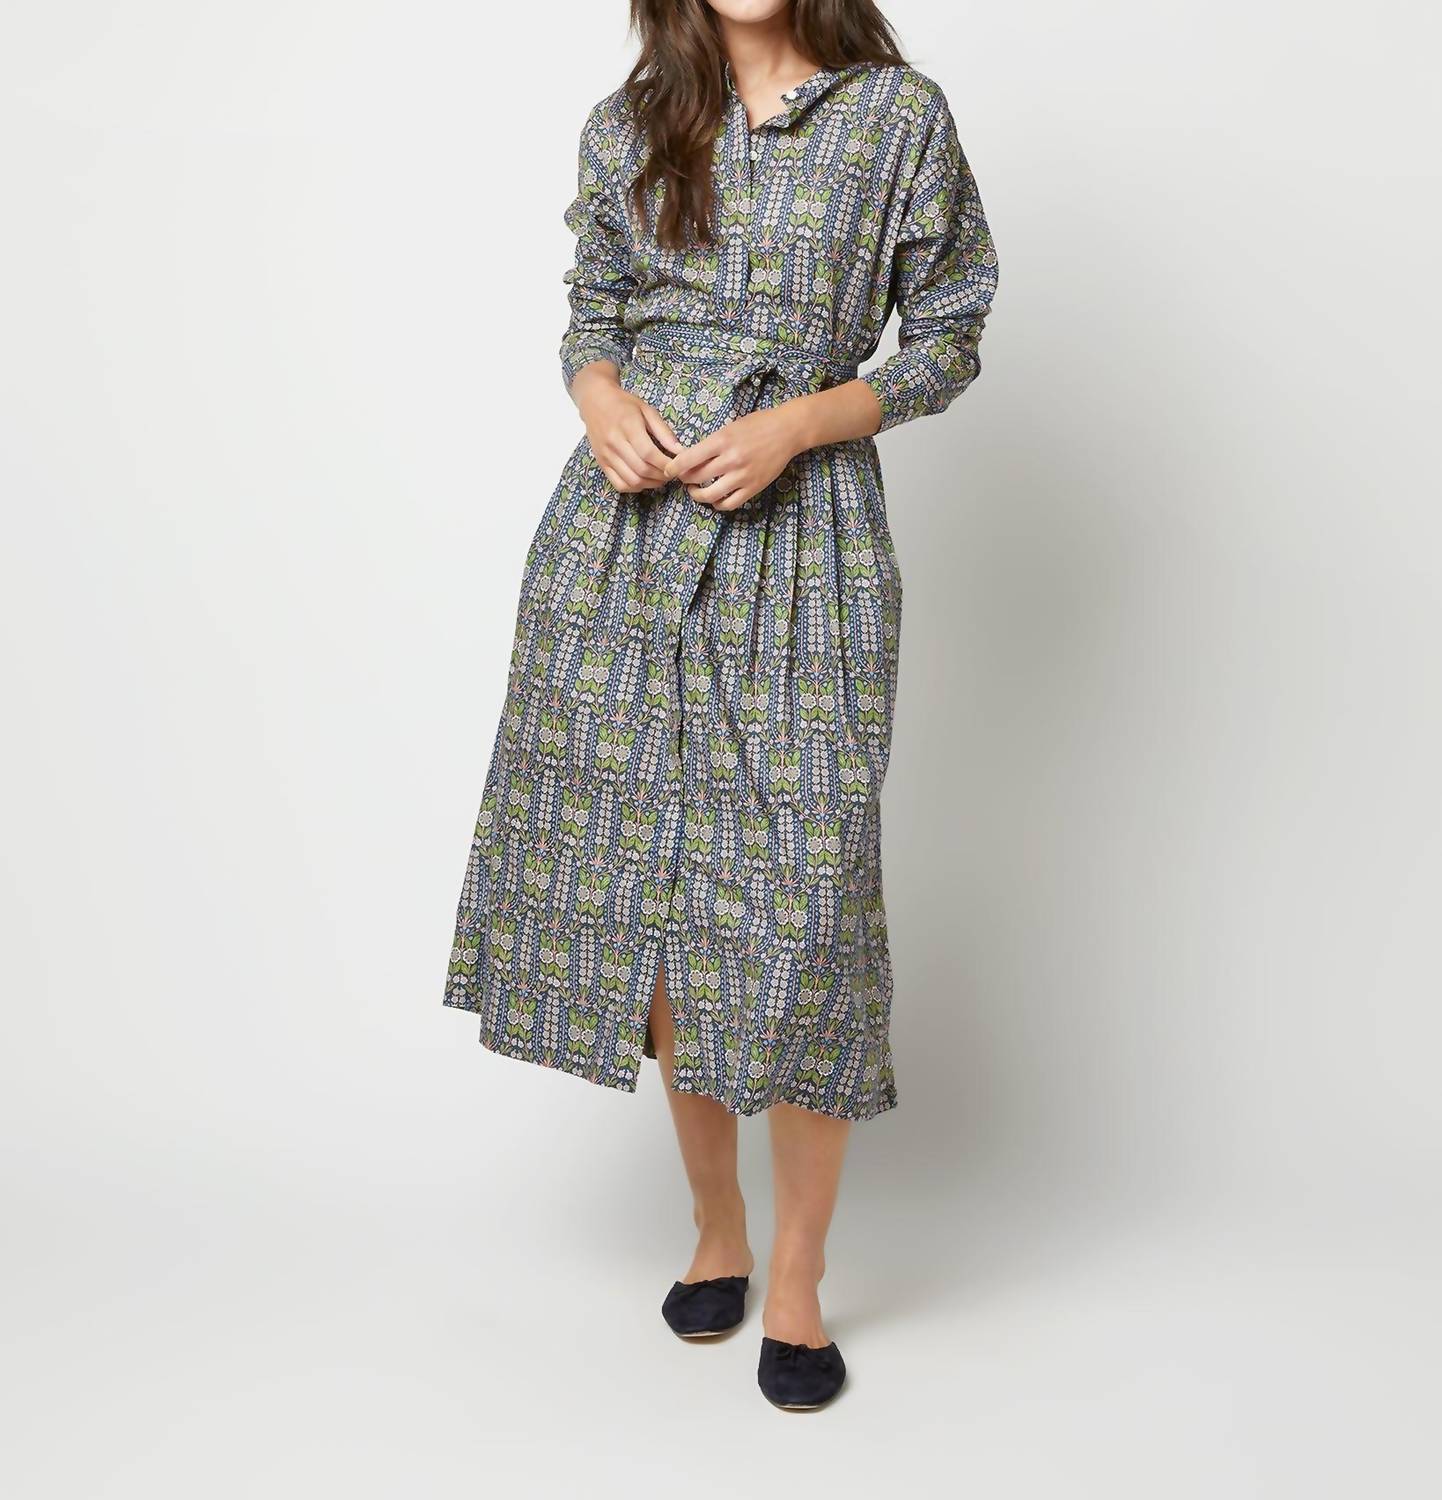 Shop Ann Mashburn Kimono Shirtwaist Dress In Blue/green Lindsay Garden Liberty Fabric